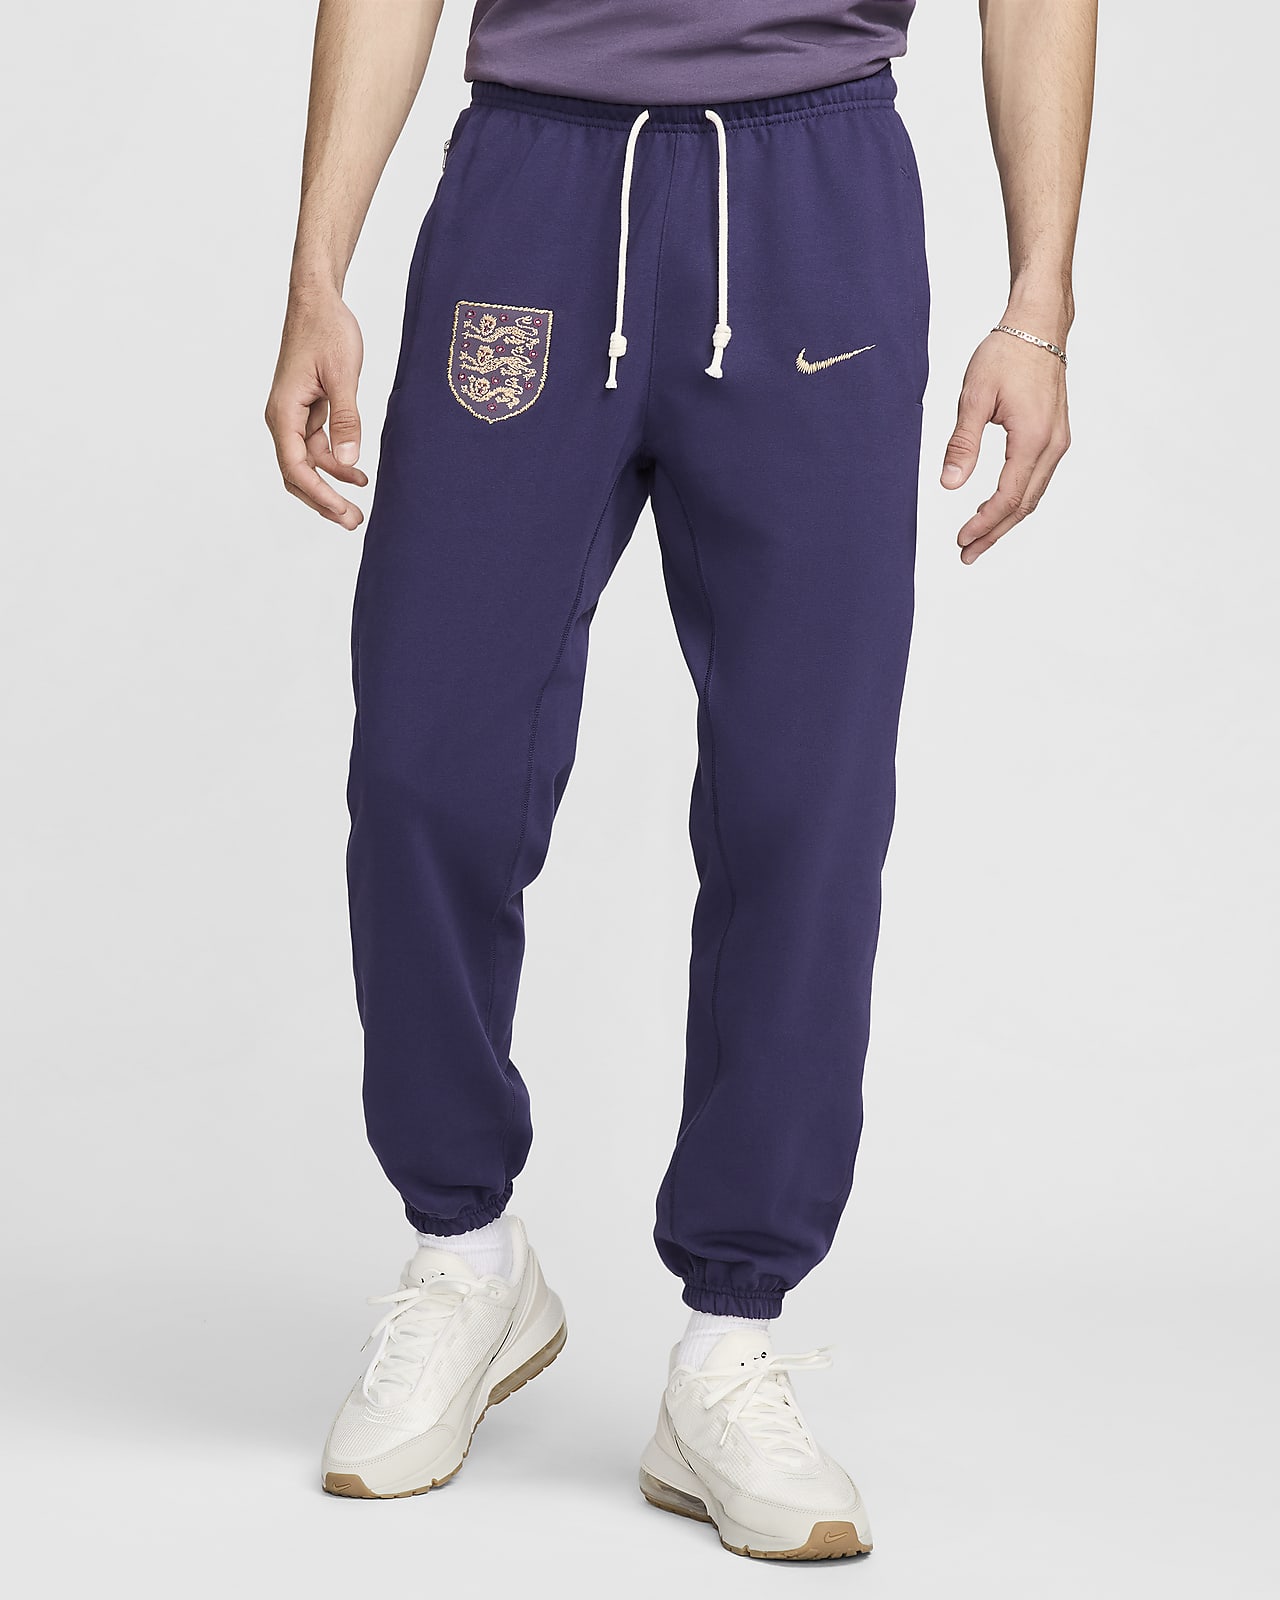 England Standard Issue Nike Football-bukser til mænd